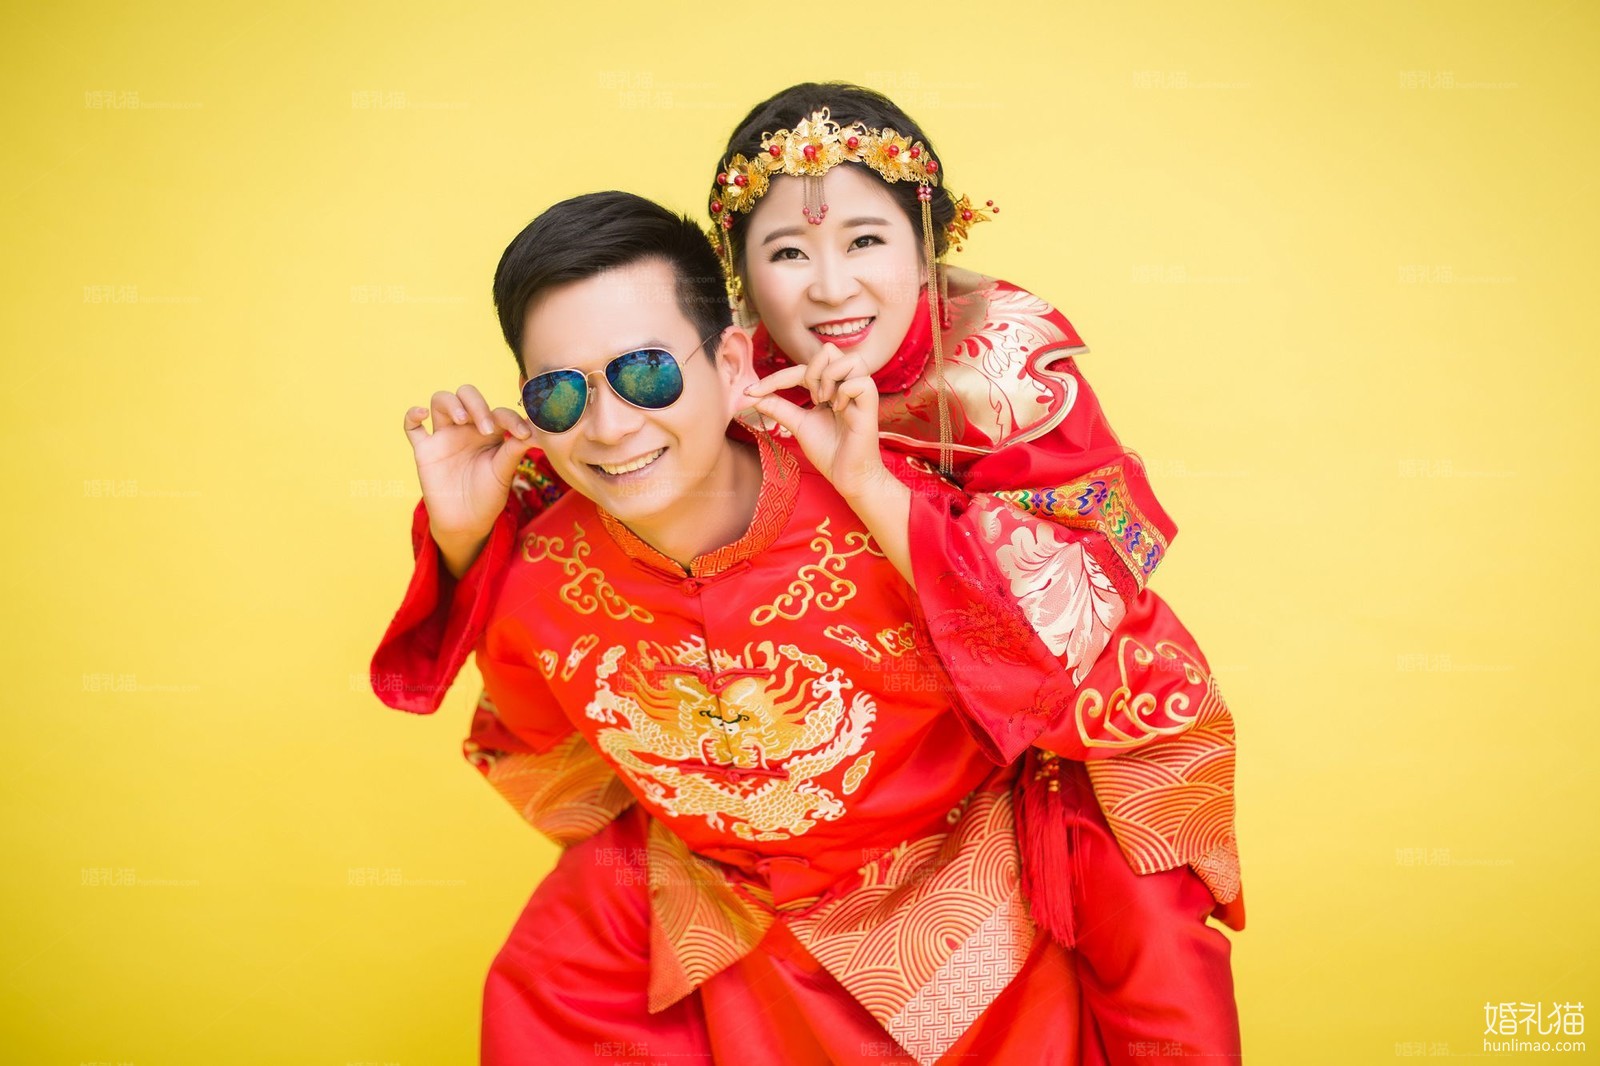 中国风婚纱照图片|纯色背景结婚照,[中国风, 纯色背景],广州婚纱照,婚纱照图片